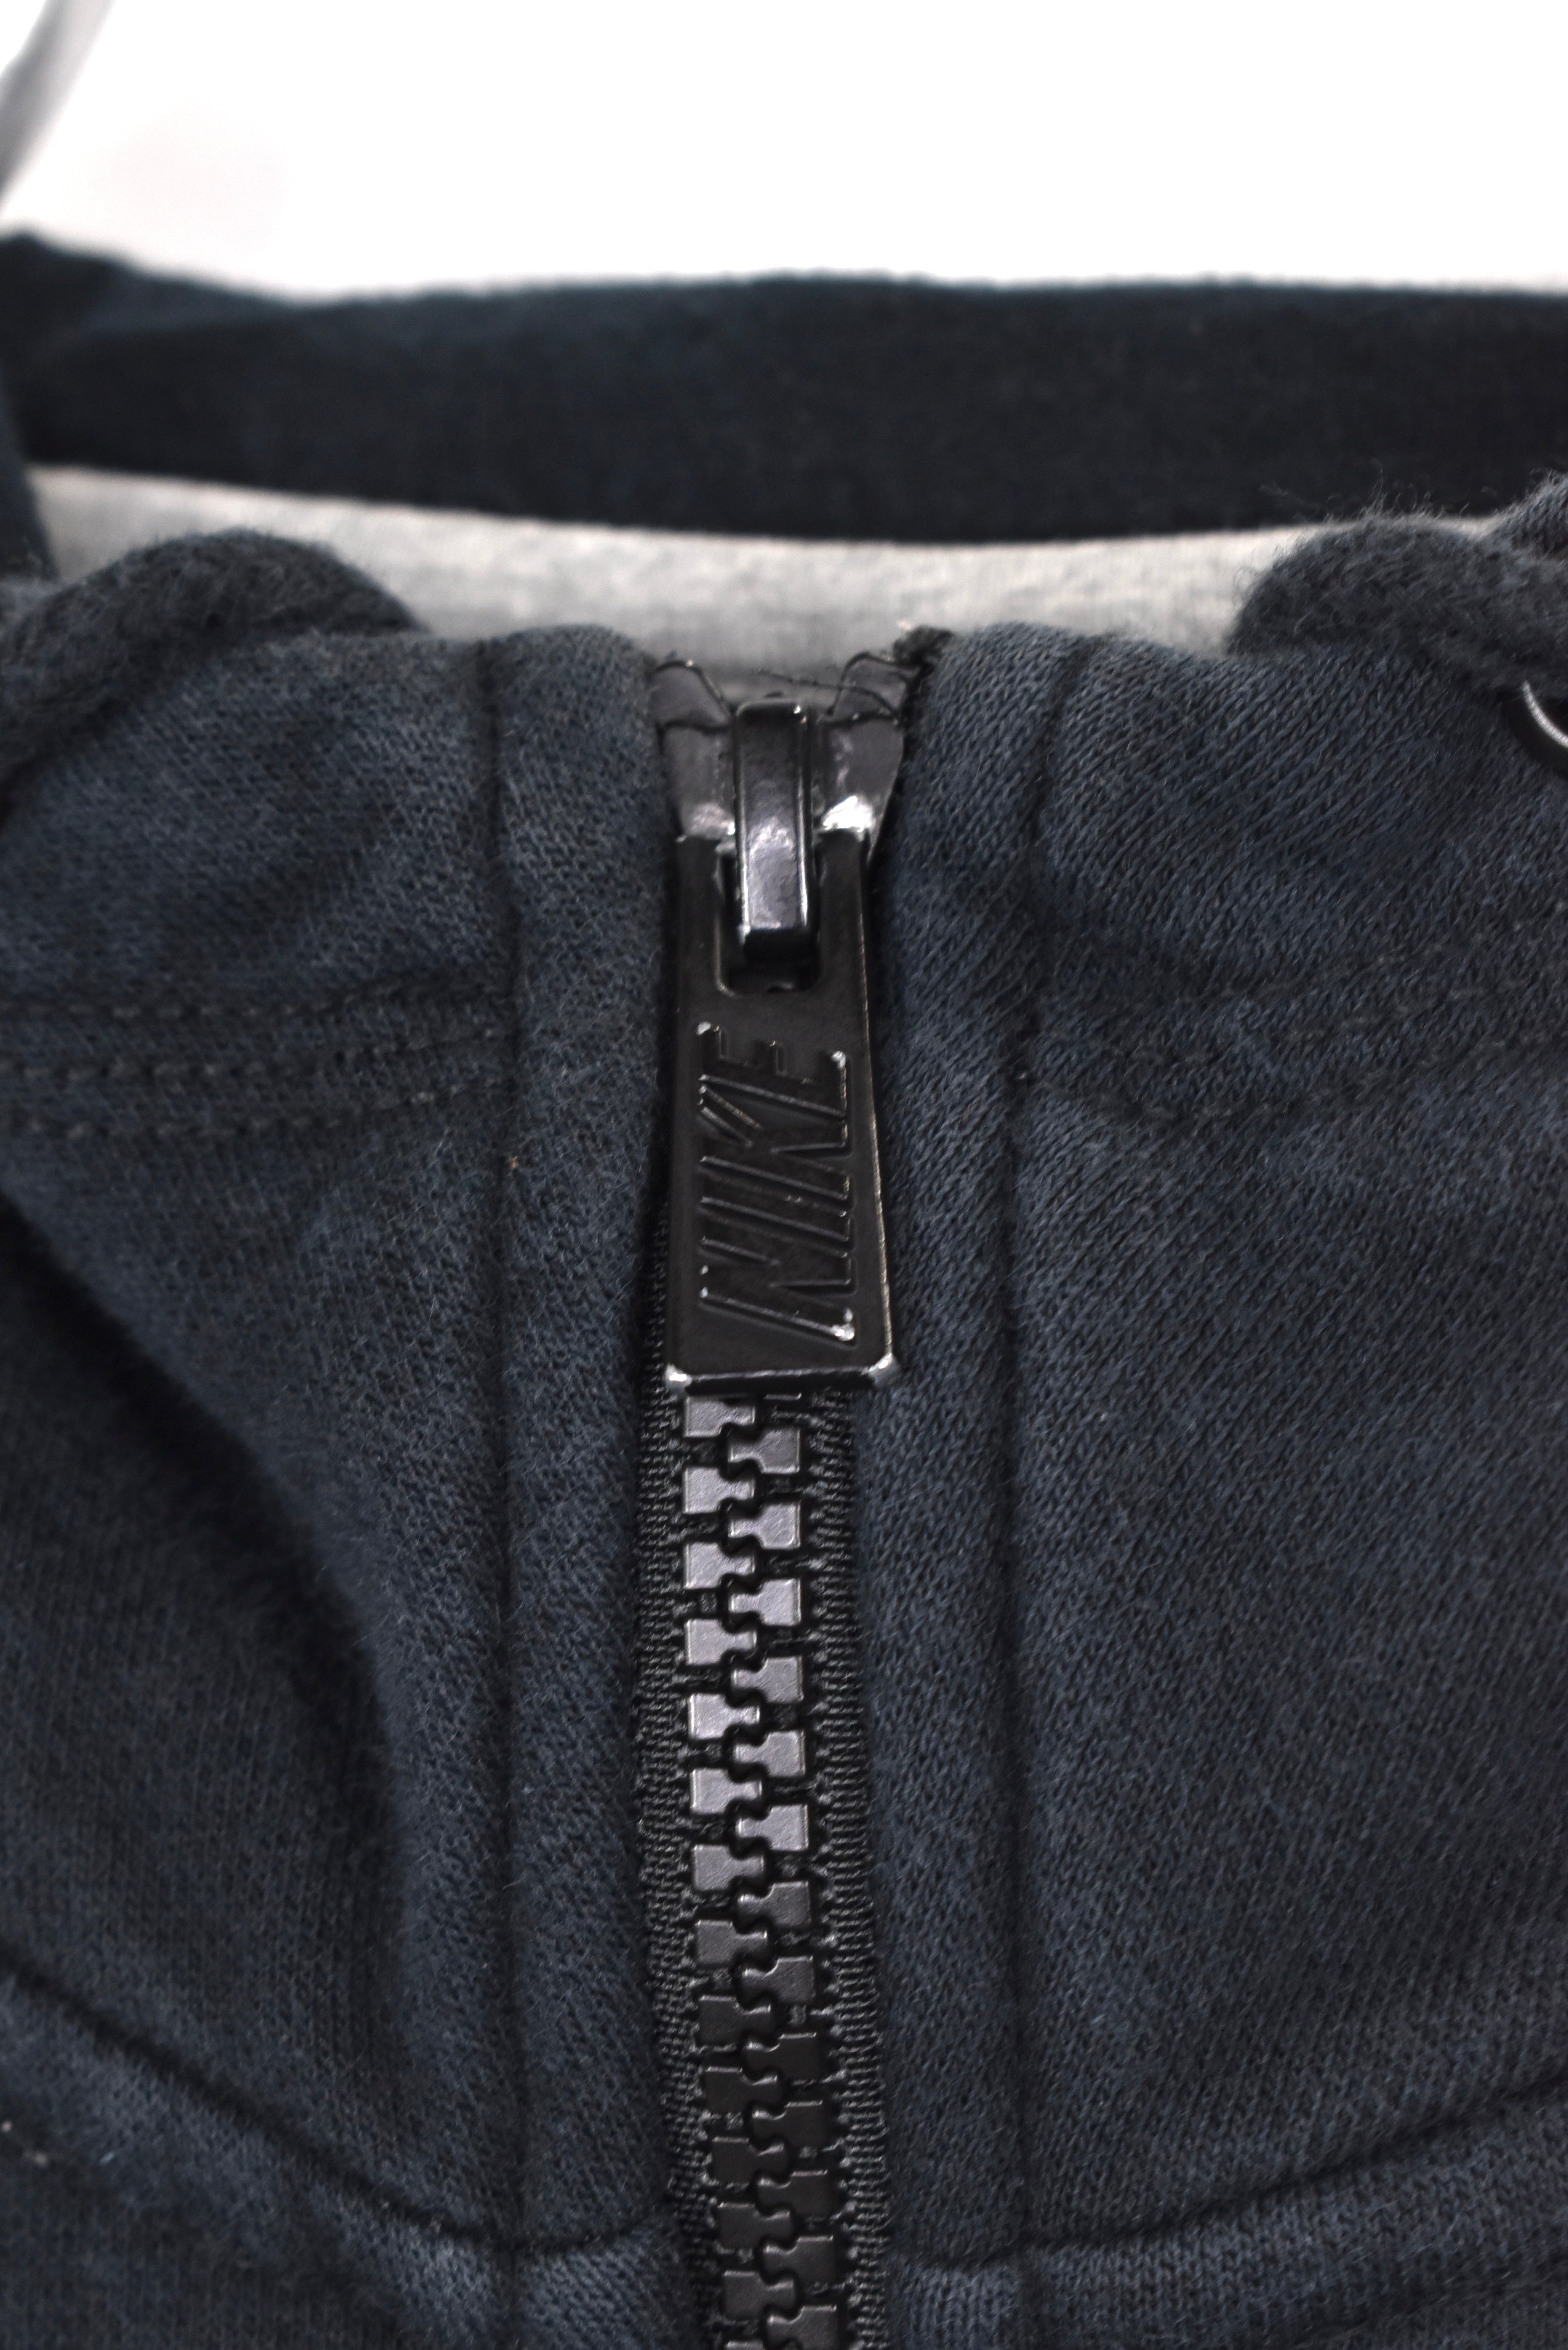 Vintage Nike hoodie, black embroidered sweatshirt - AU Large NIKE